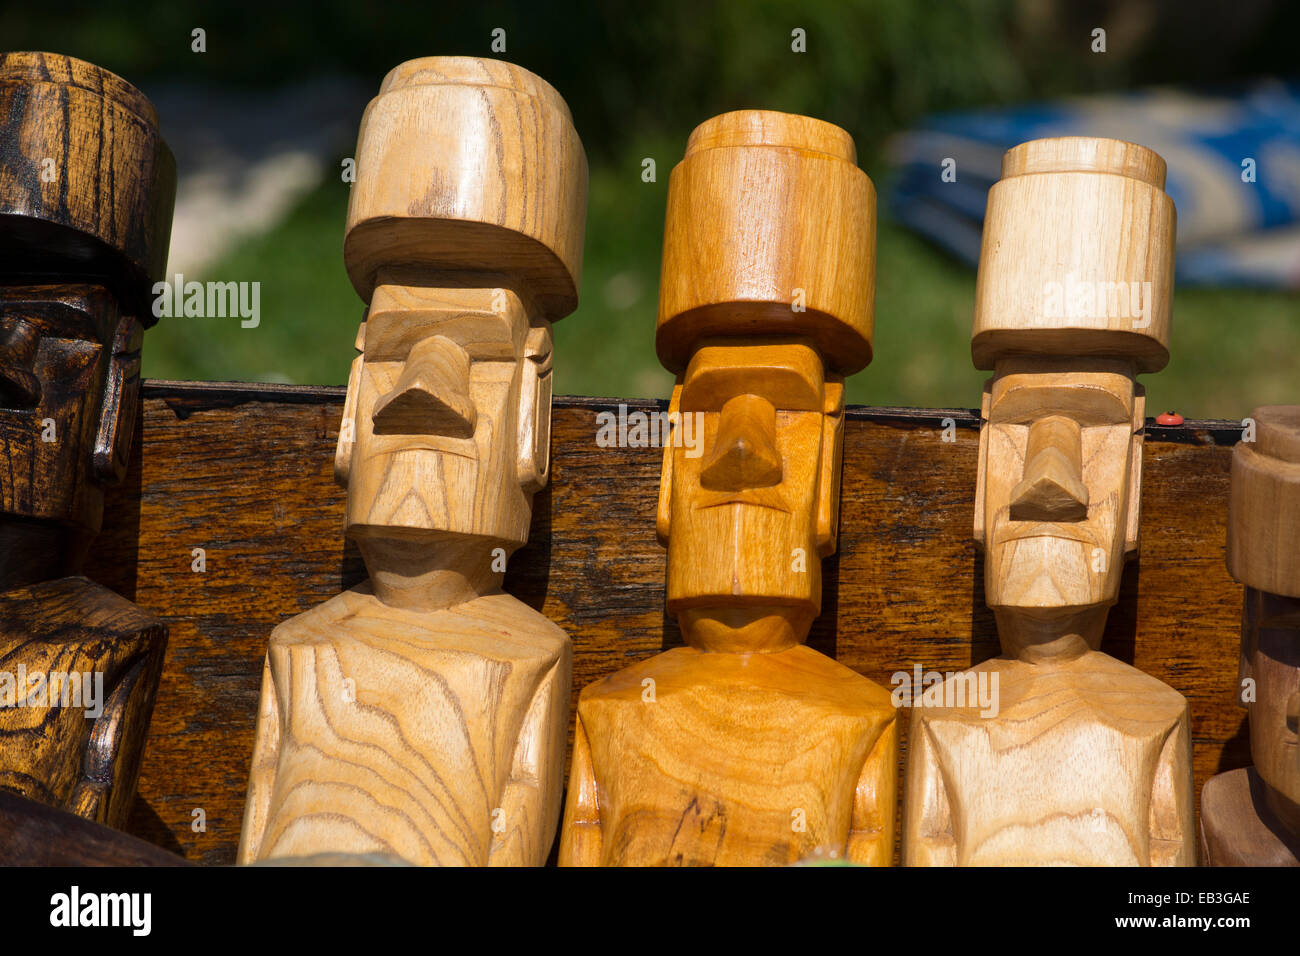 Le Chili, l'île de Pâques ou Rapa Nui. Souvenirs typiques de l'artisanat à vendre autour de l'île. Moi en bois sculpté de figures. Banque D'Images